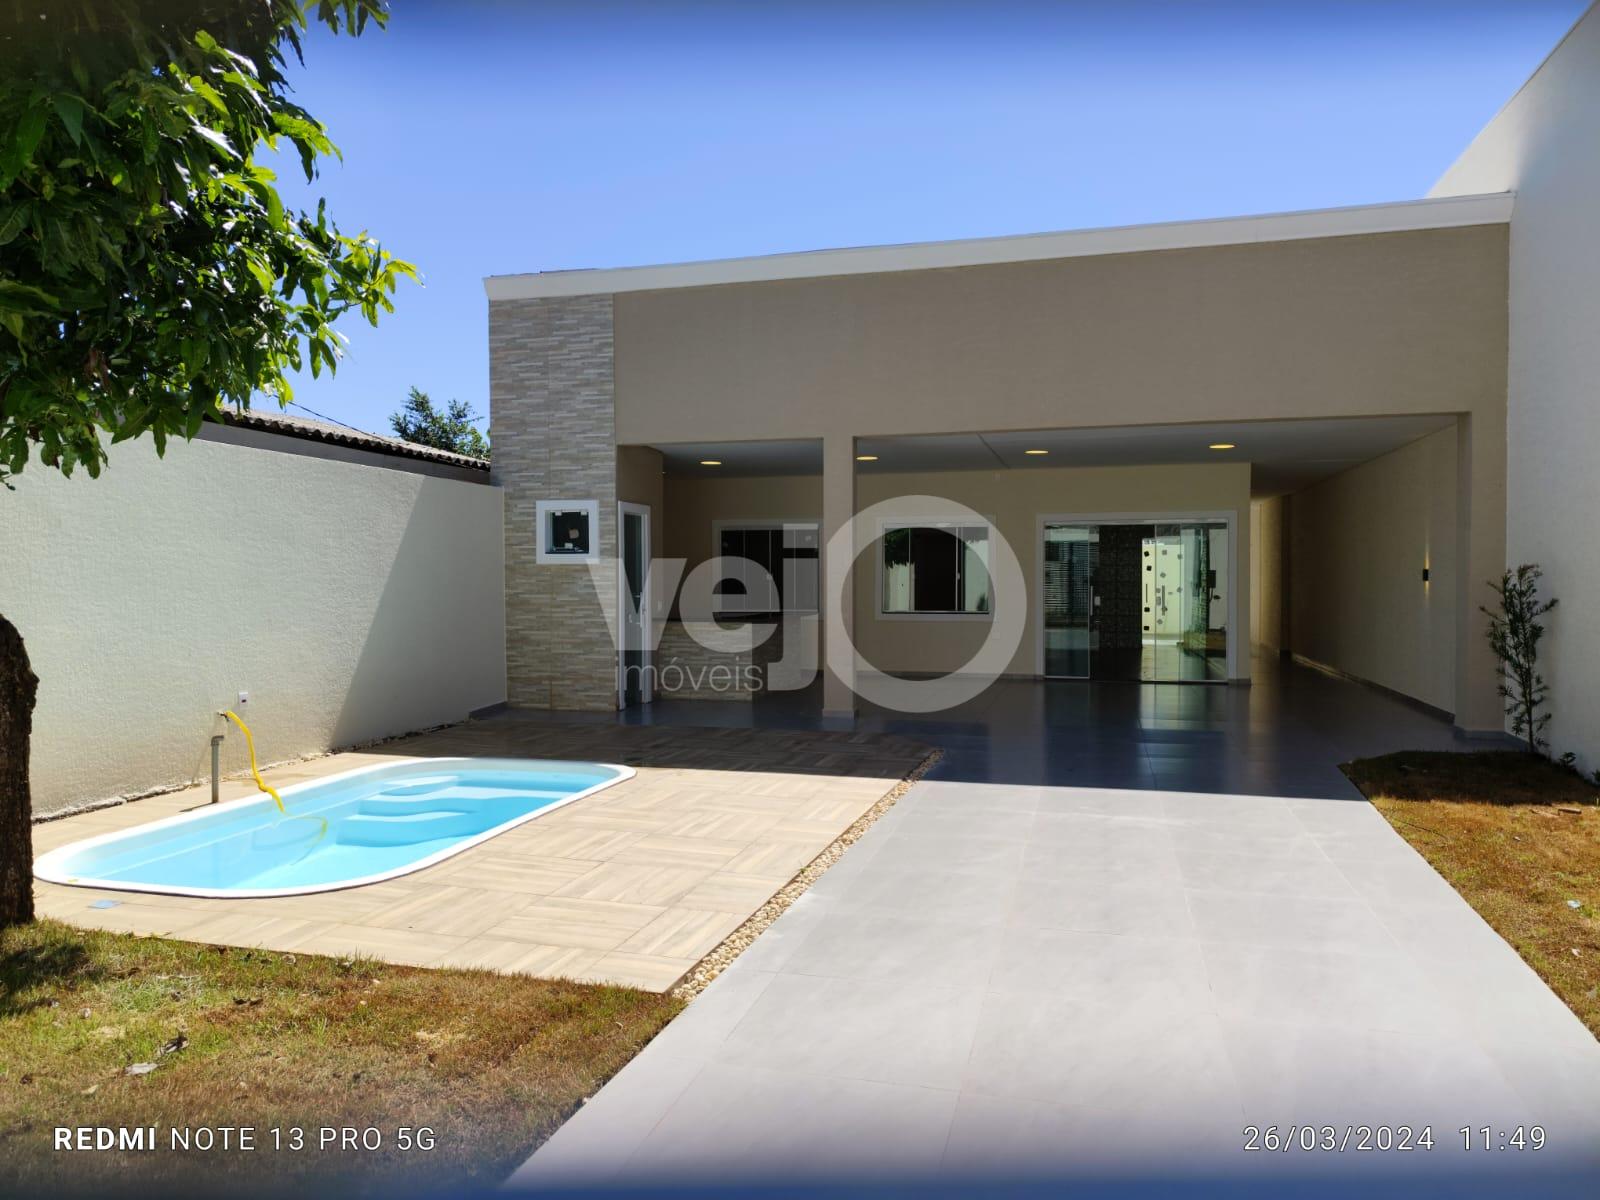 Casa com suite 2 quartos com piscina   venda, Jardim Ip, FOZ DO IGUACU - PR